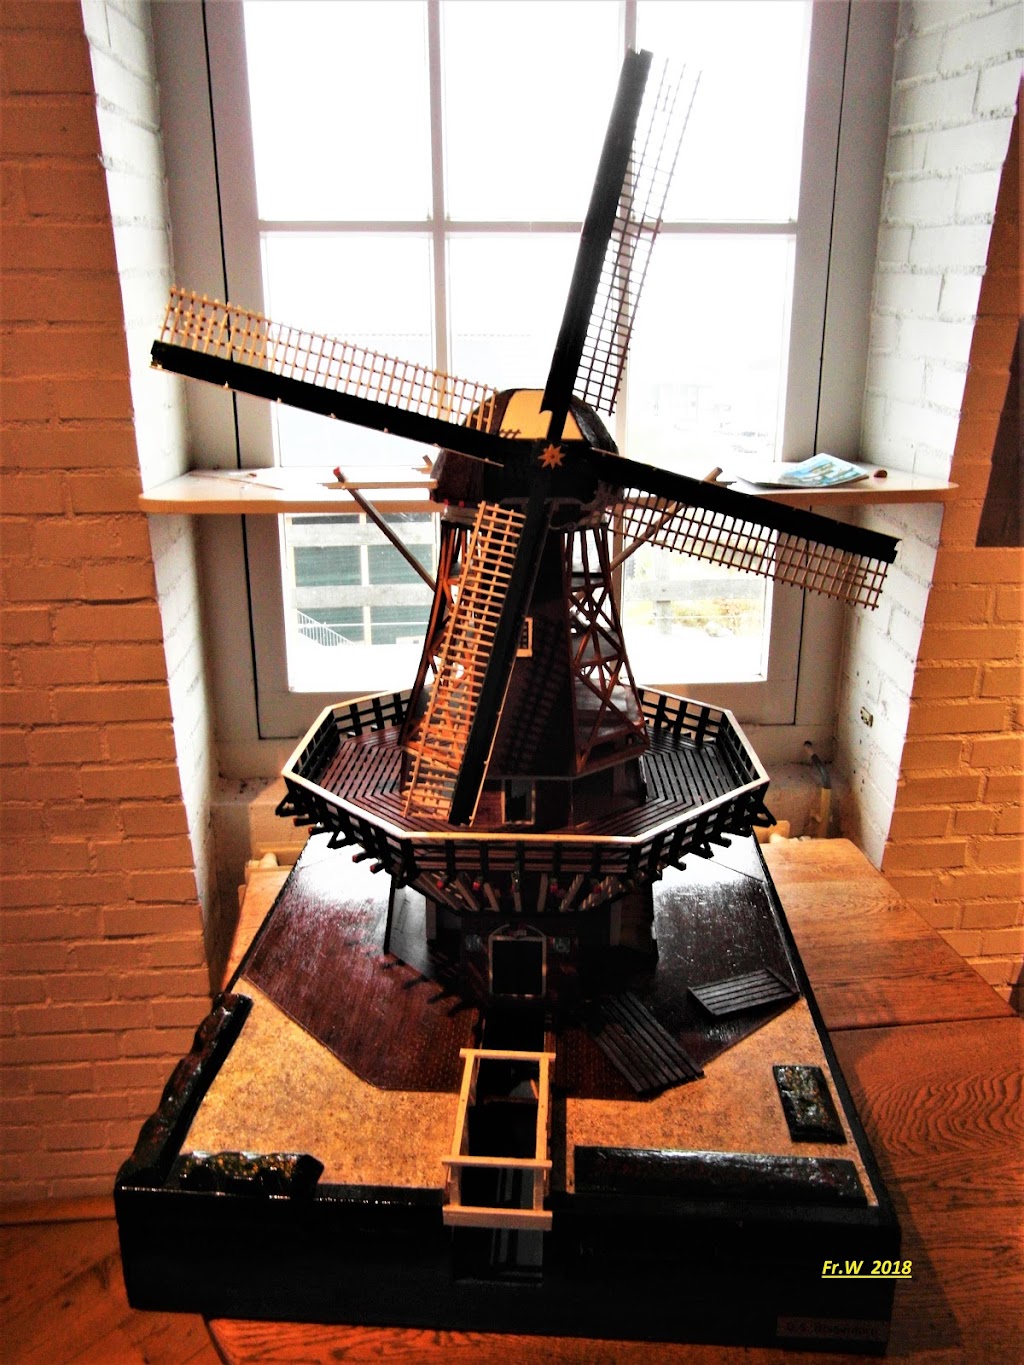 Molen Van Sloten (1990) & Kuiperij Museum - Windmill | Akersluis 10, 1066 EZ Amsterdam, Netherlands | Phone: 020 669 0412